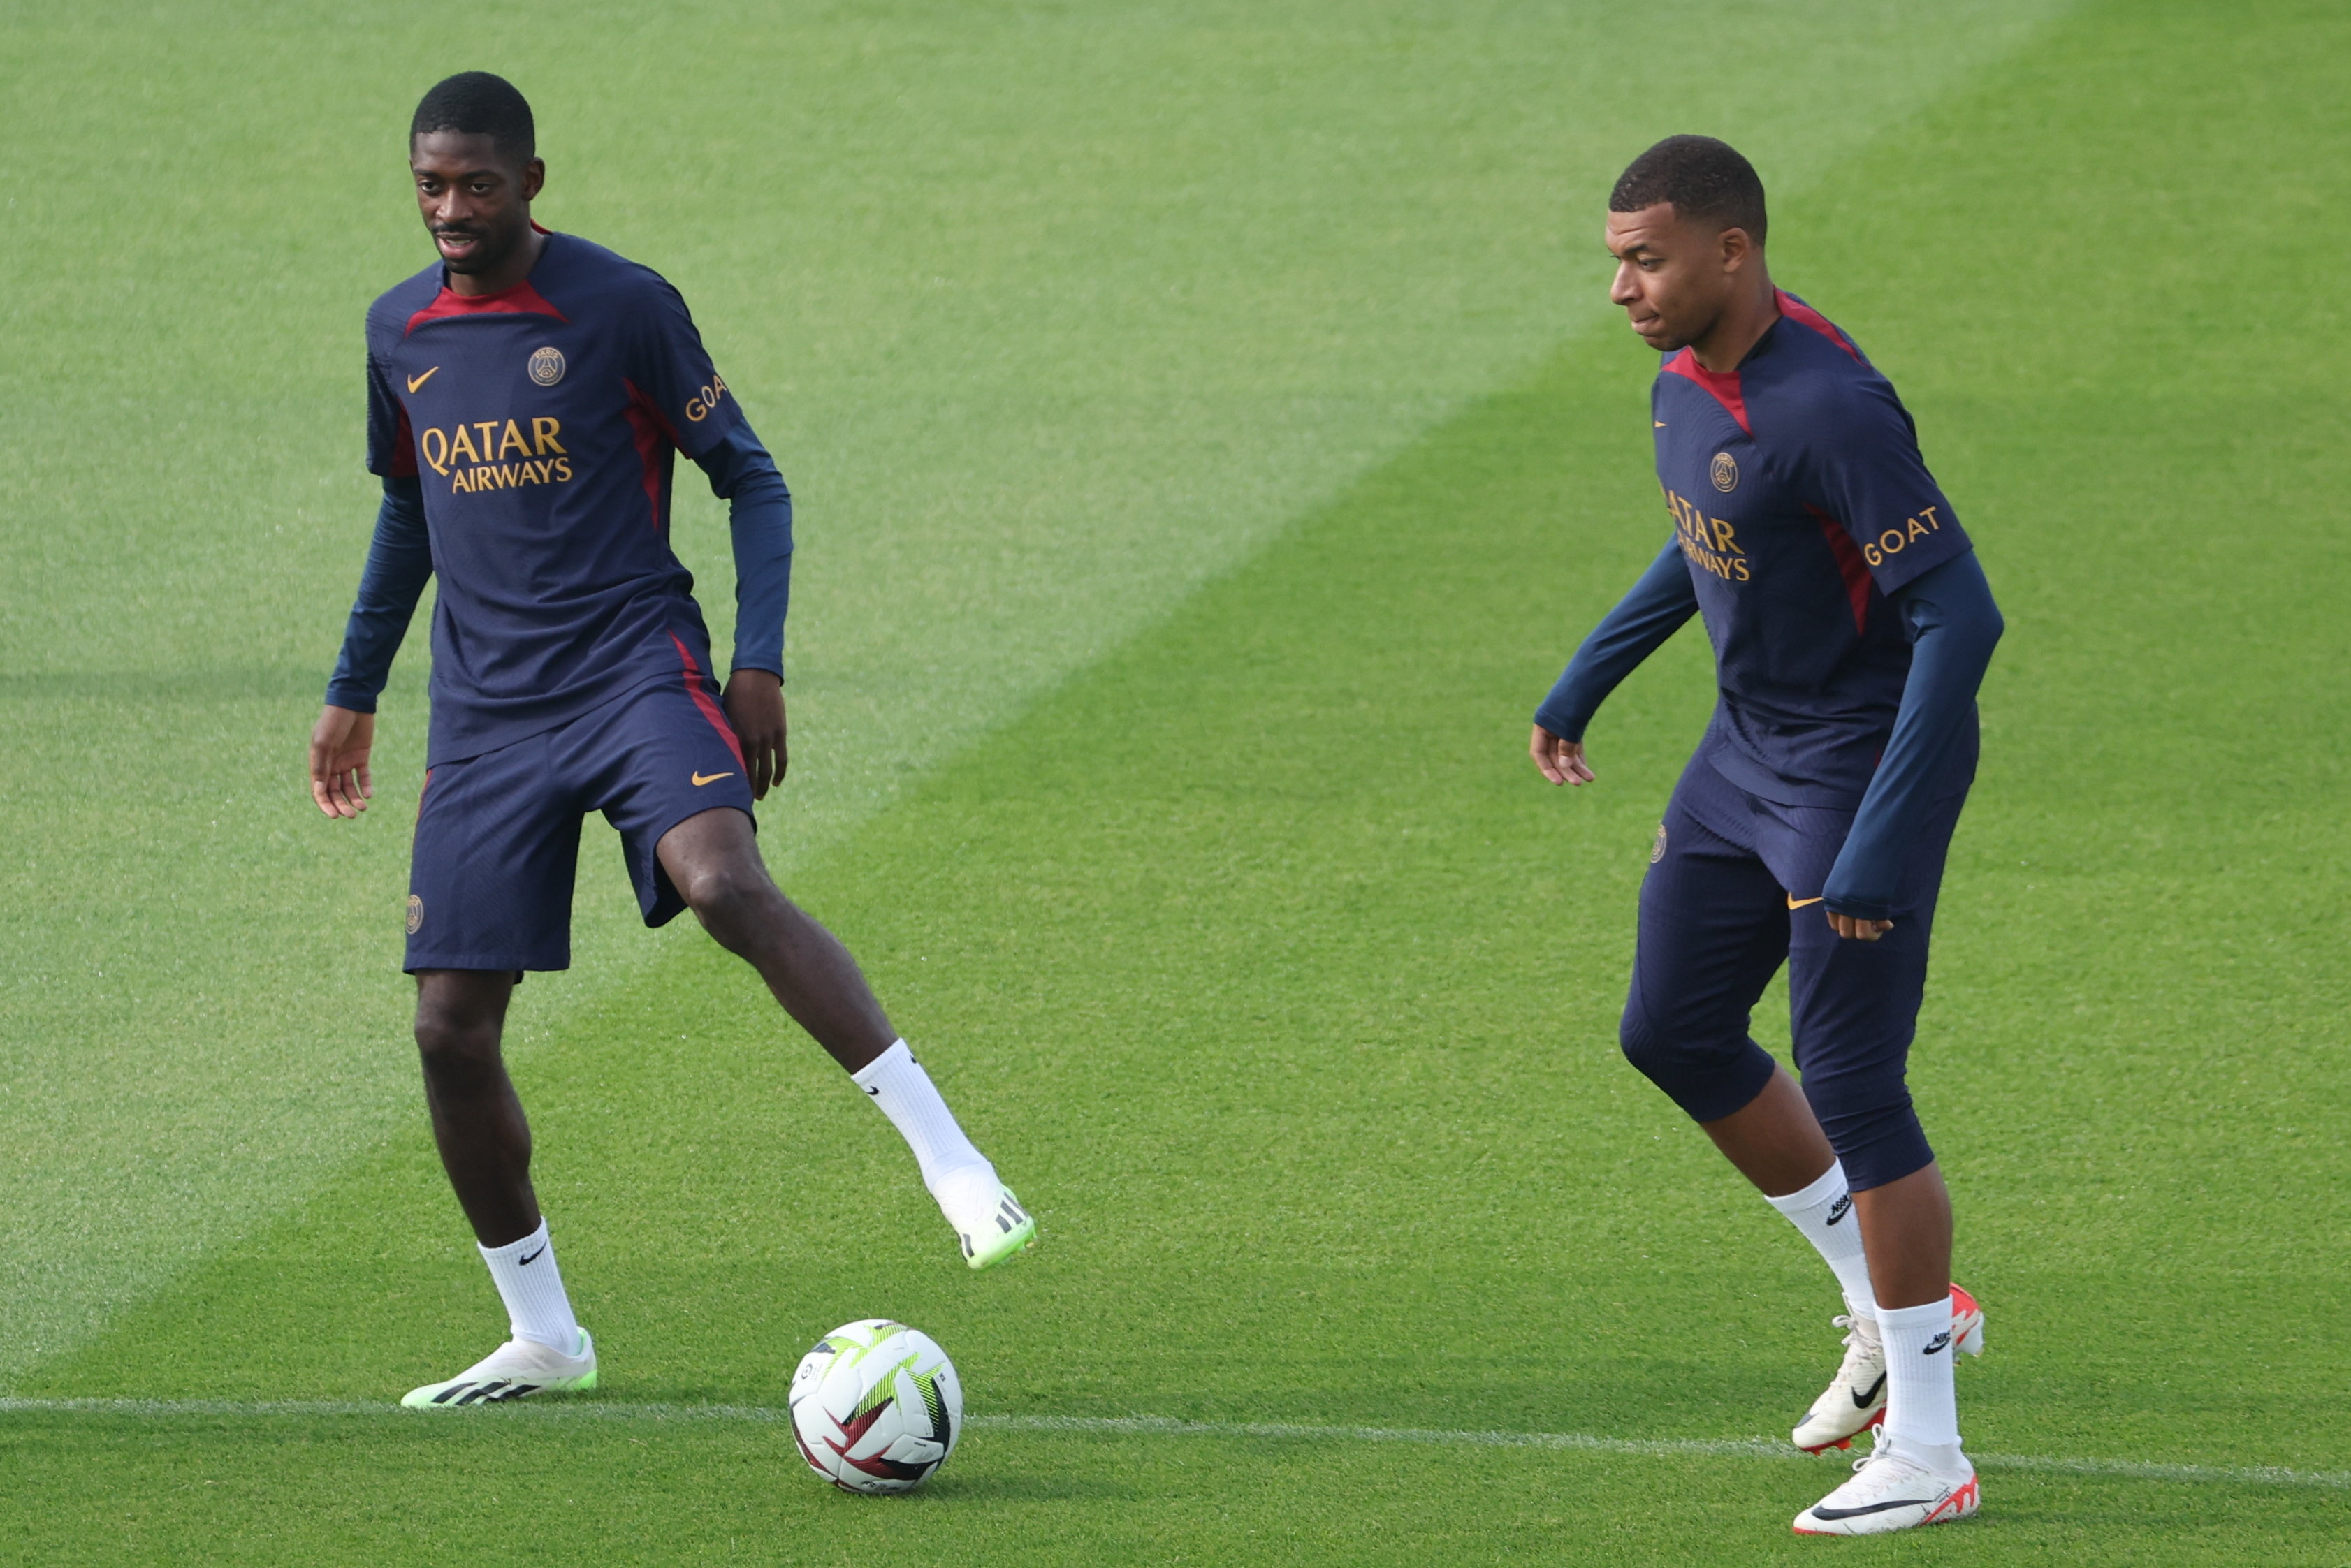 Amis à la ville, Ousmane Dembélé (à gauche) et Kylian Mbappé (à droite) sont apparus proches à l'entraînement du Paris Saint-Germain cette semaine. LP/Arnaud Journois